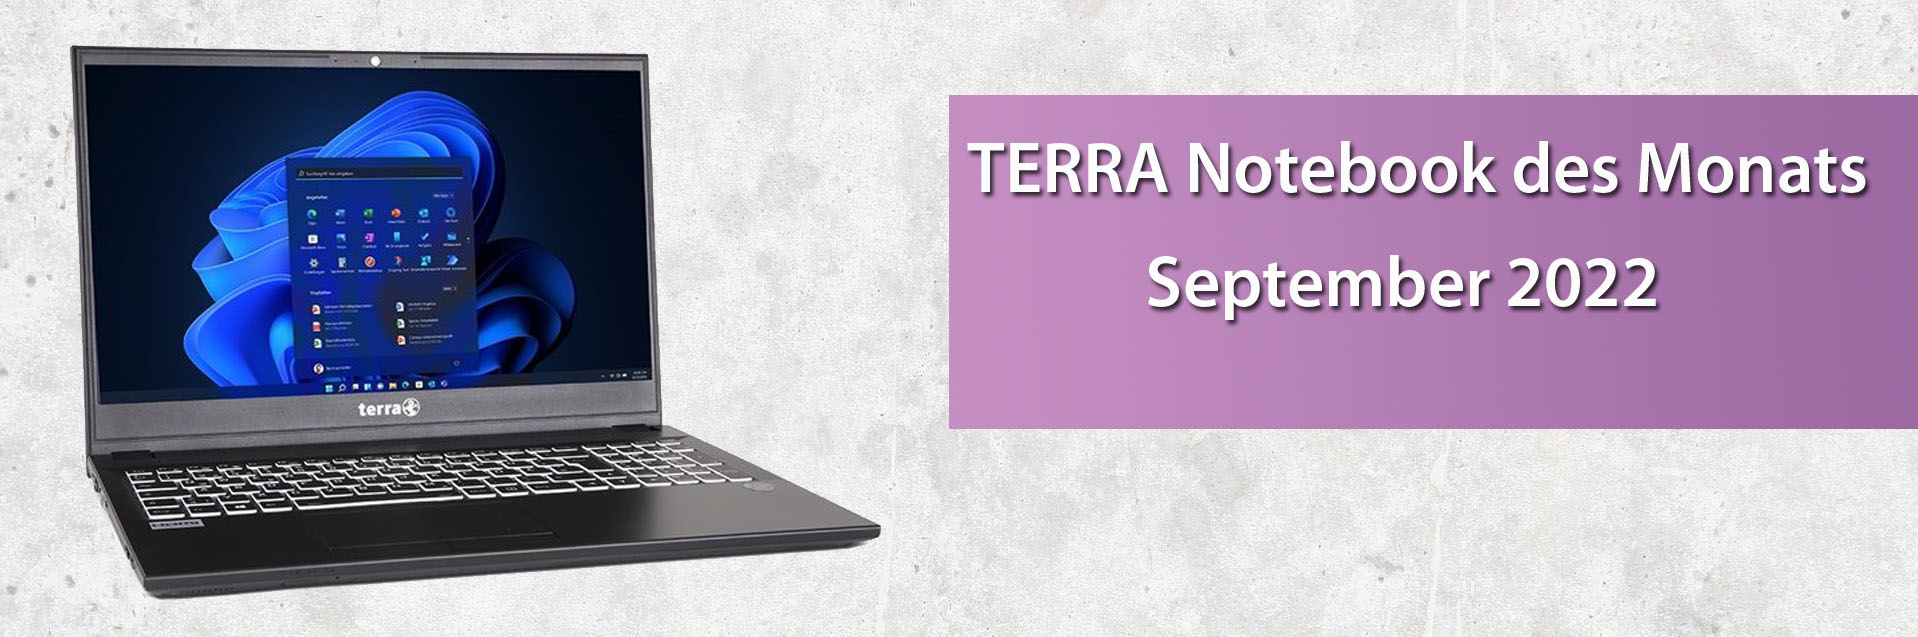 Terra:Notebook des Monats September